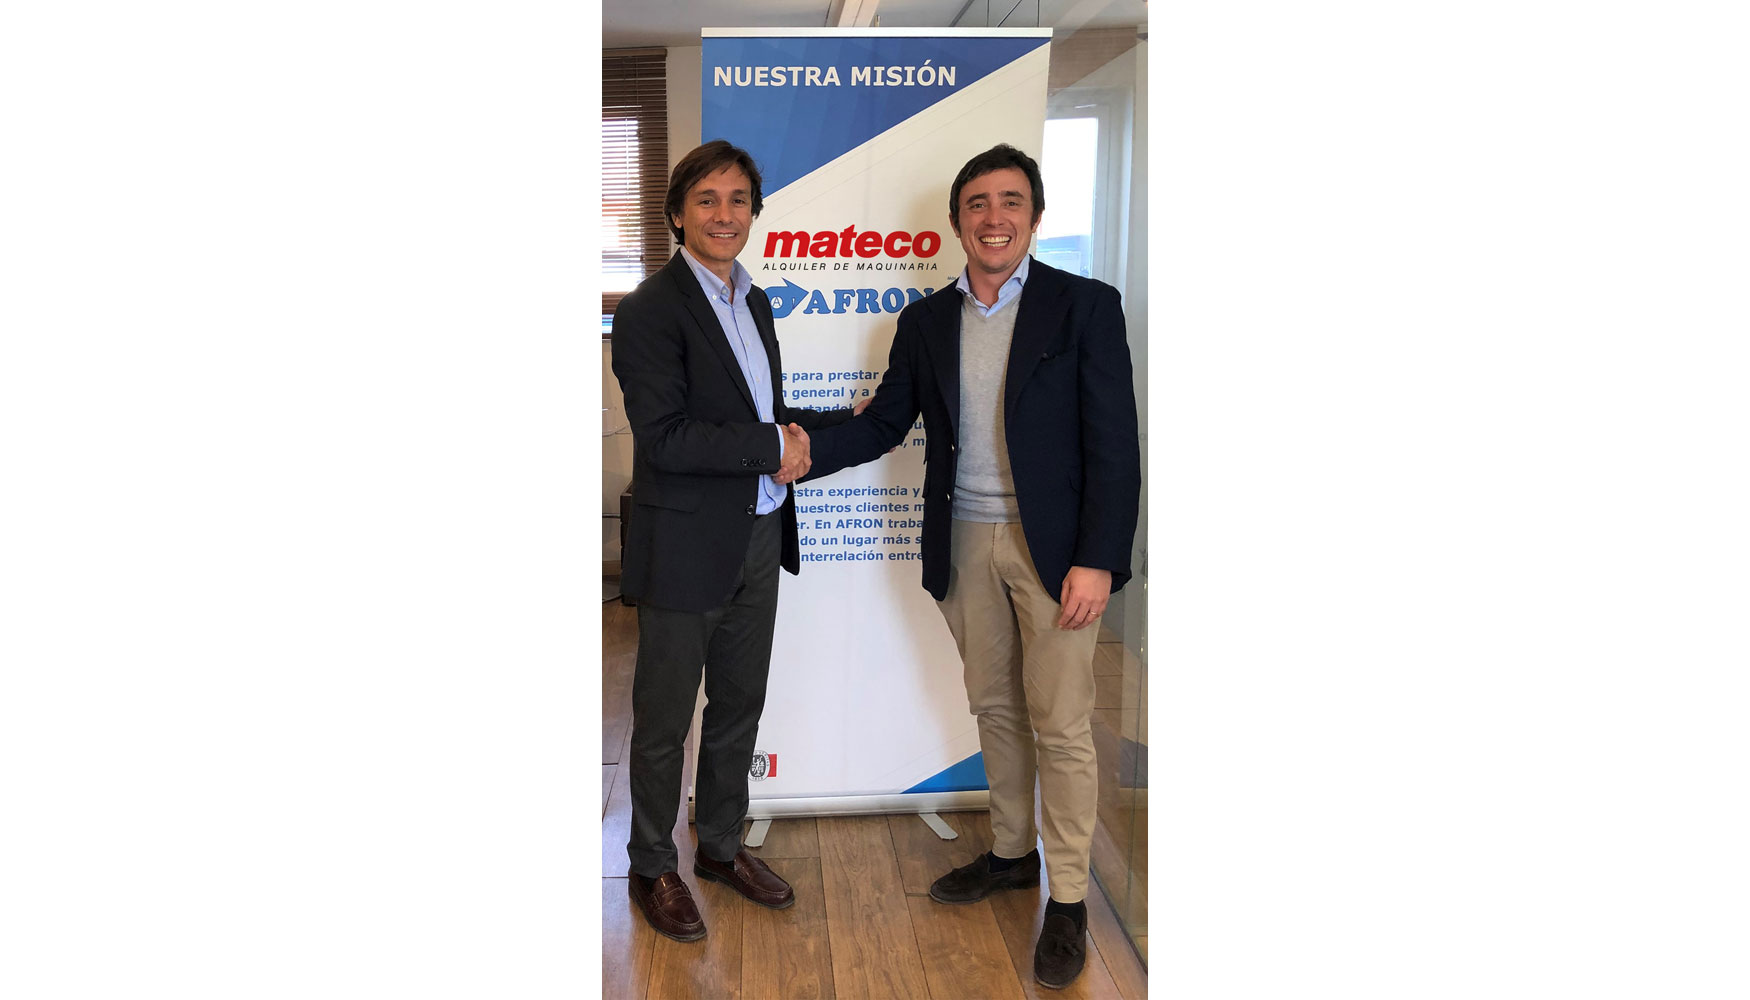 De izquierda a derecha: Carlos Jordà, CEO de Mateco en España, y Alberto Gutknecht Donoso, propietario y gerente de Afron...